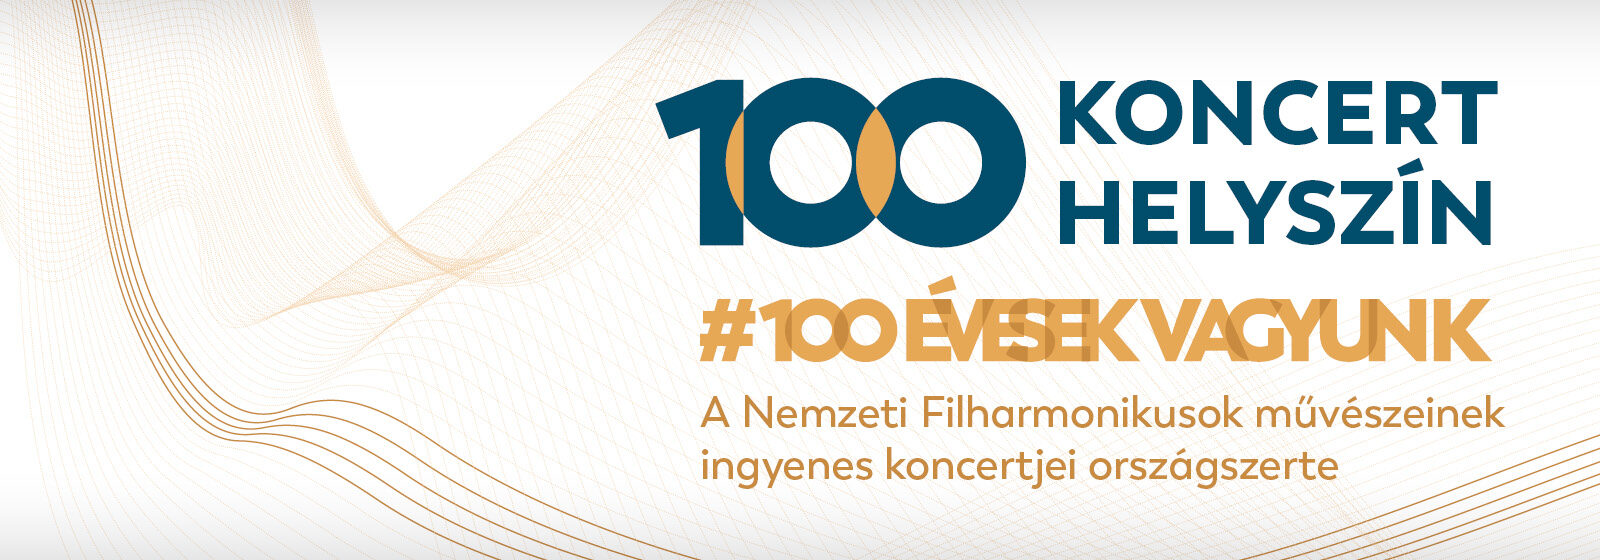 100 koncert, 100 helyszín – Tiszaújváros